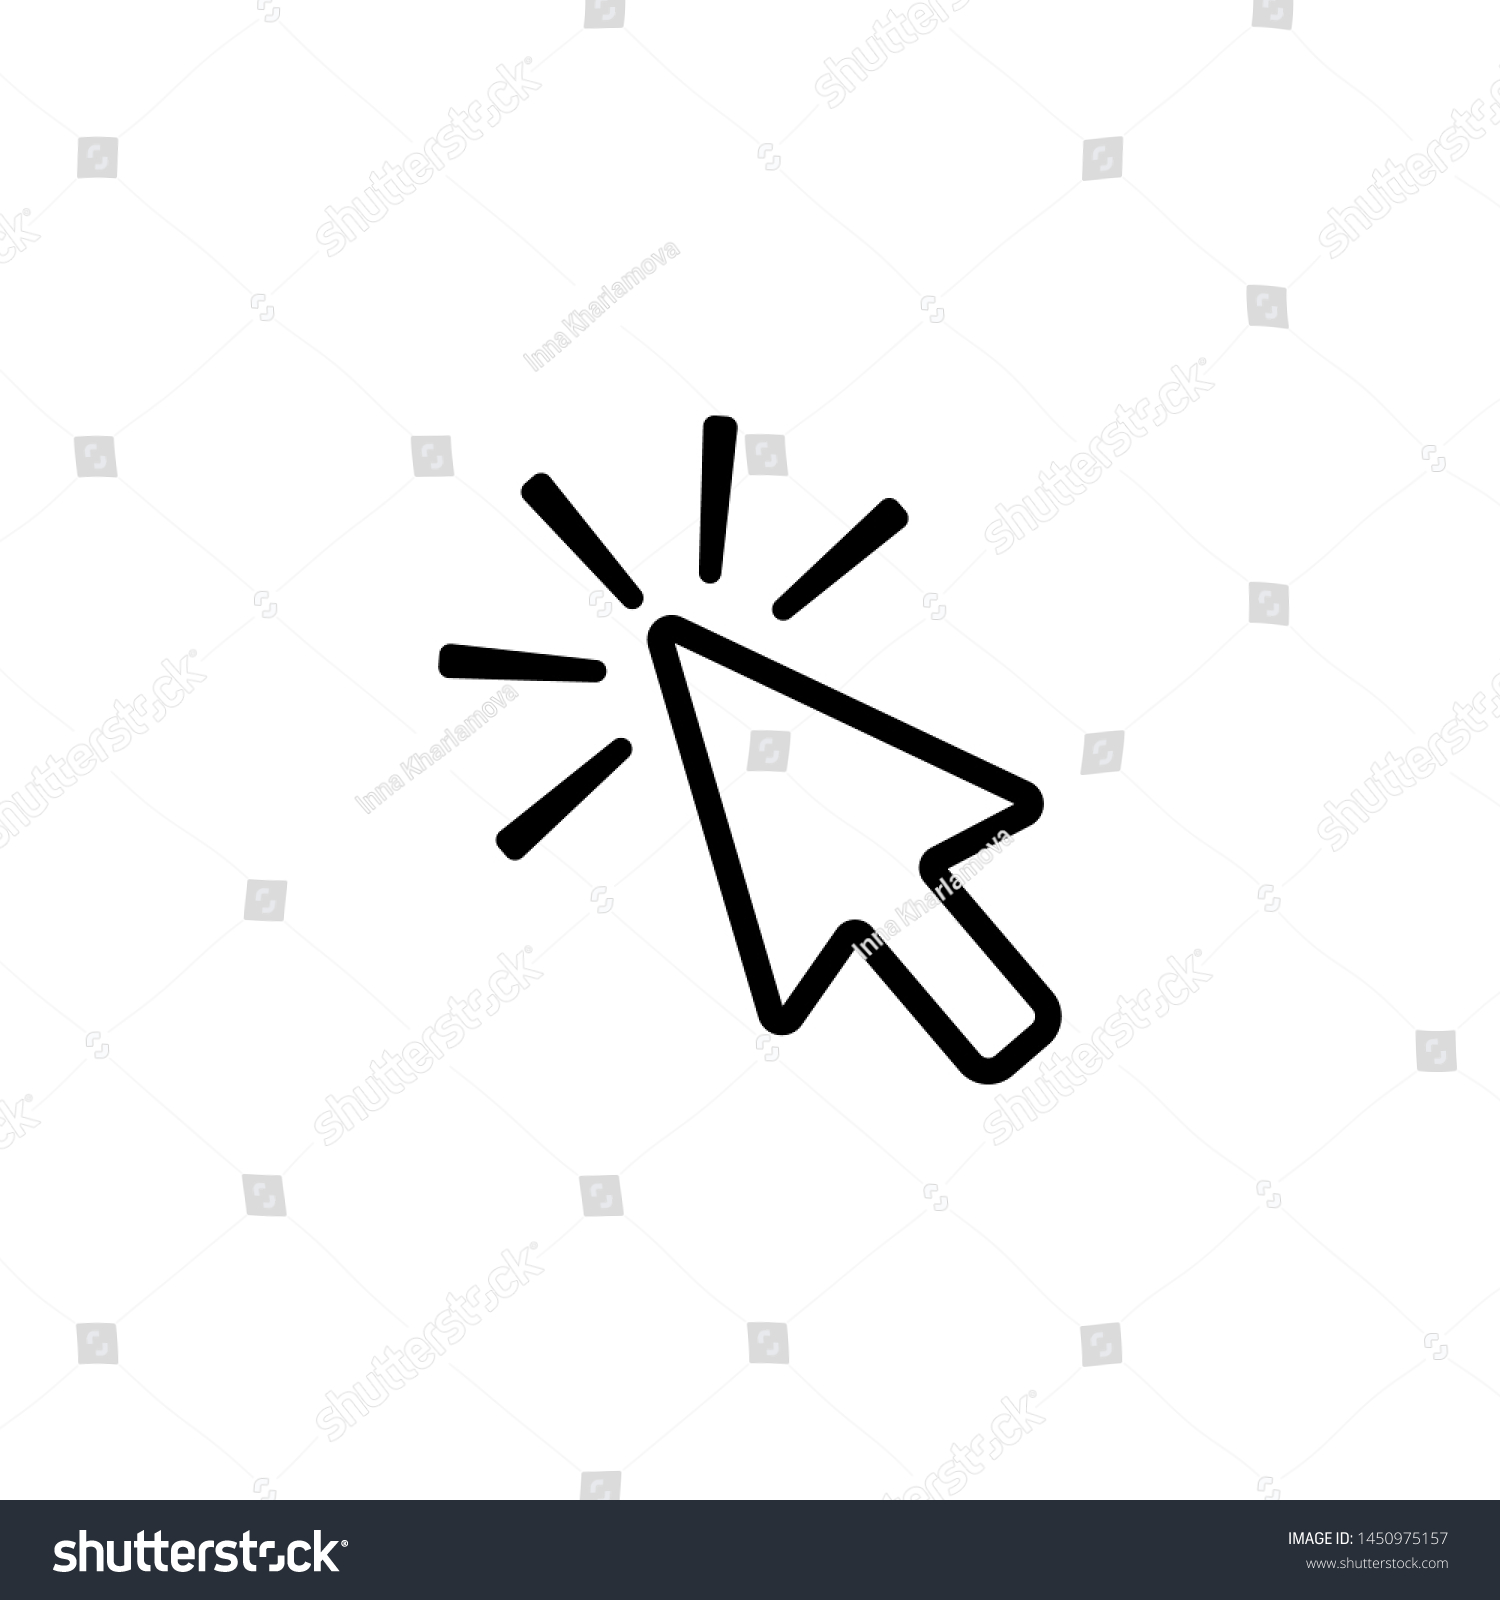 Click contour arrow,  icon to click vector icon #1450975157